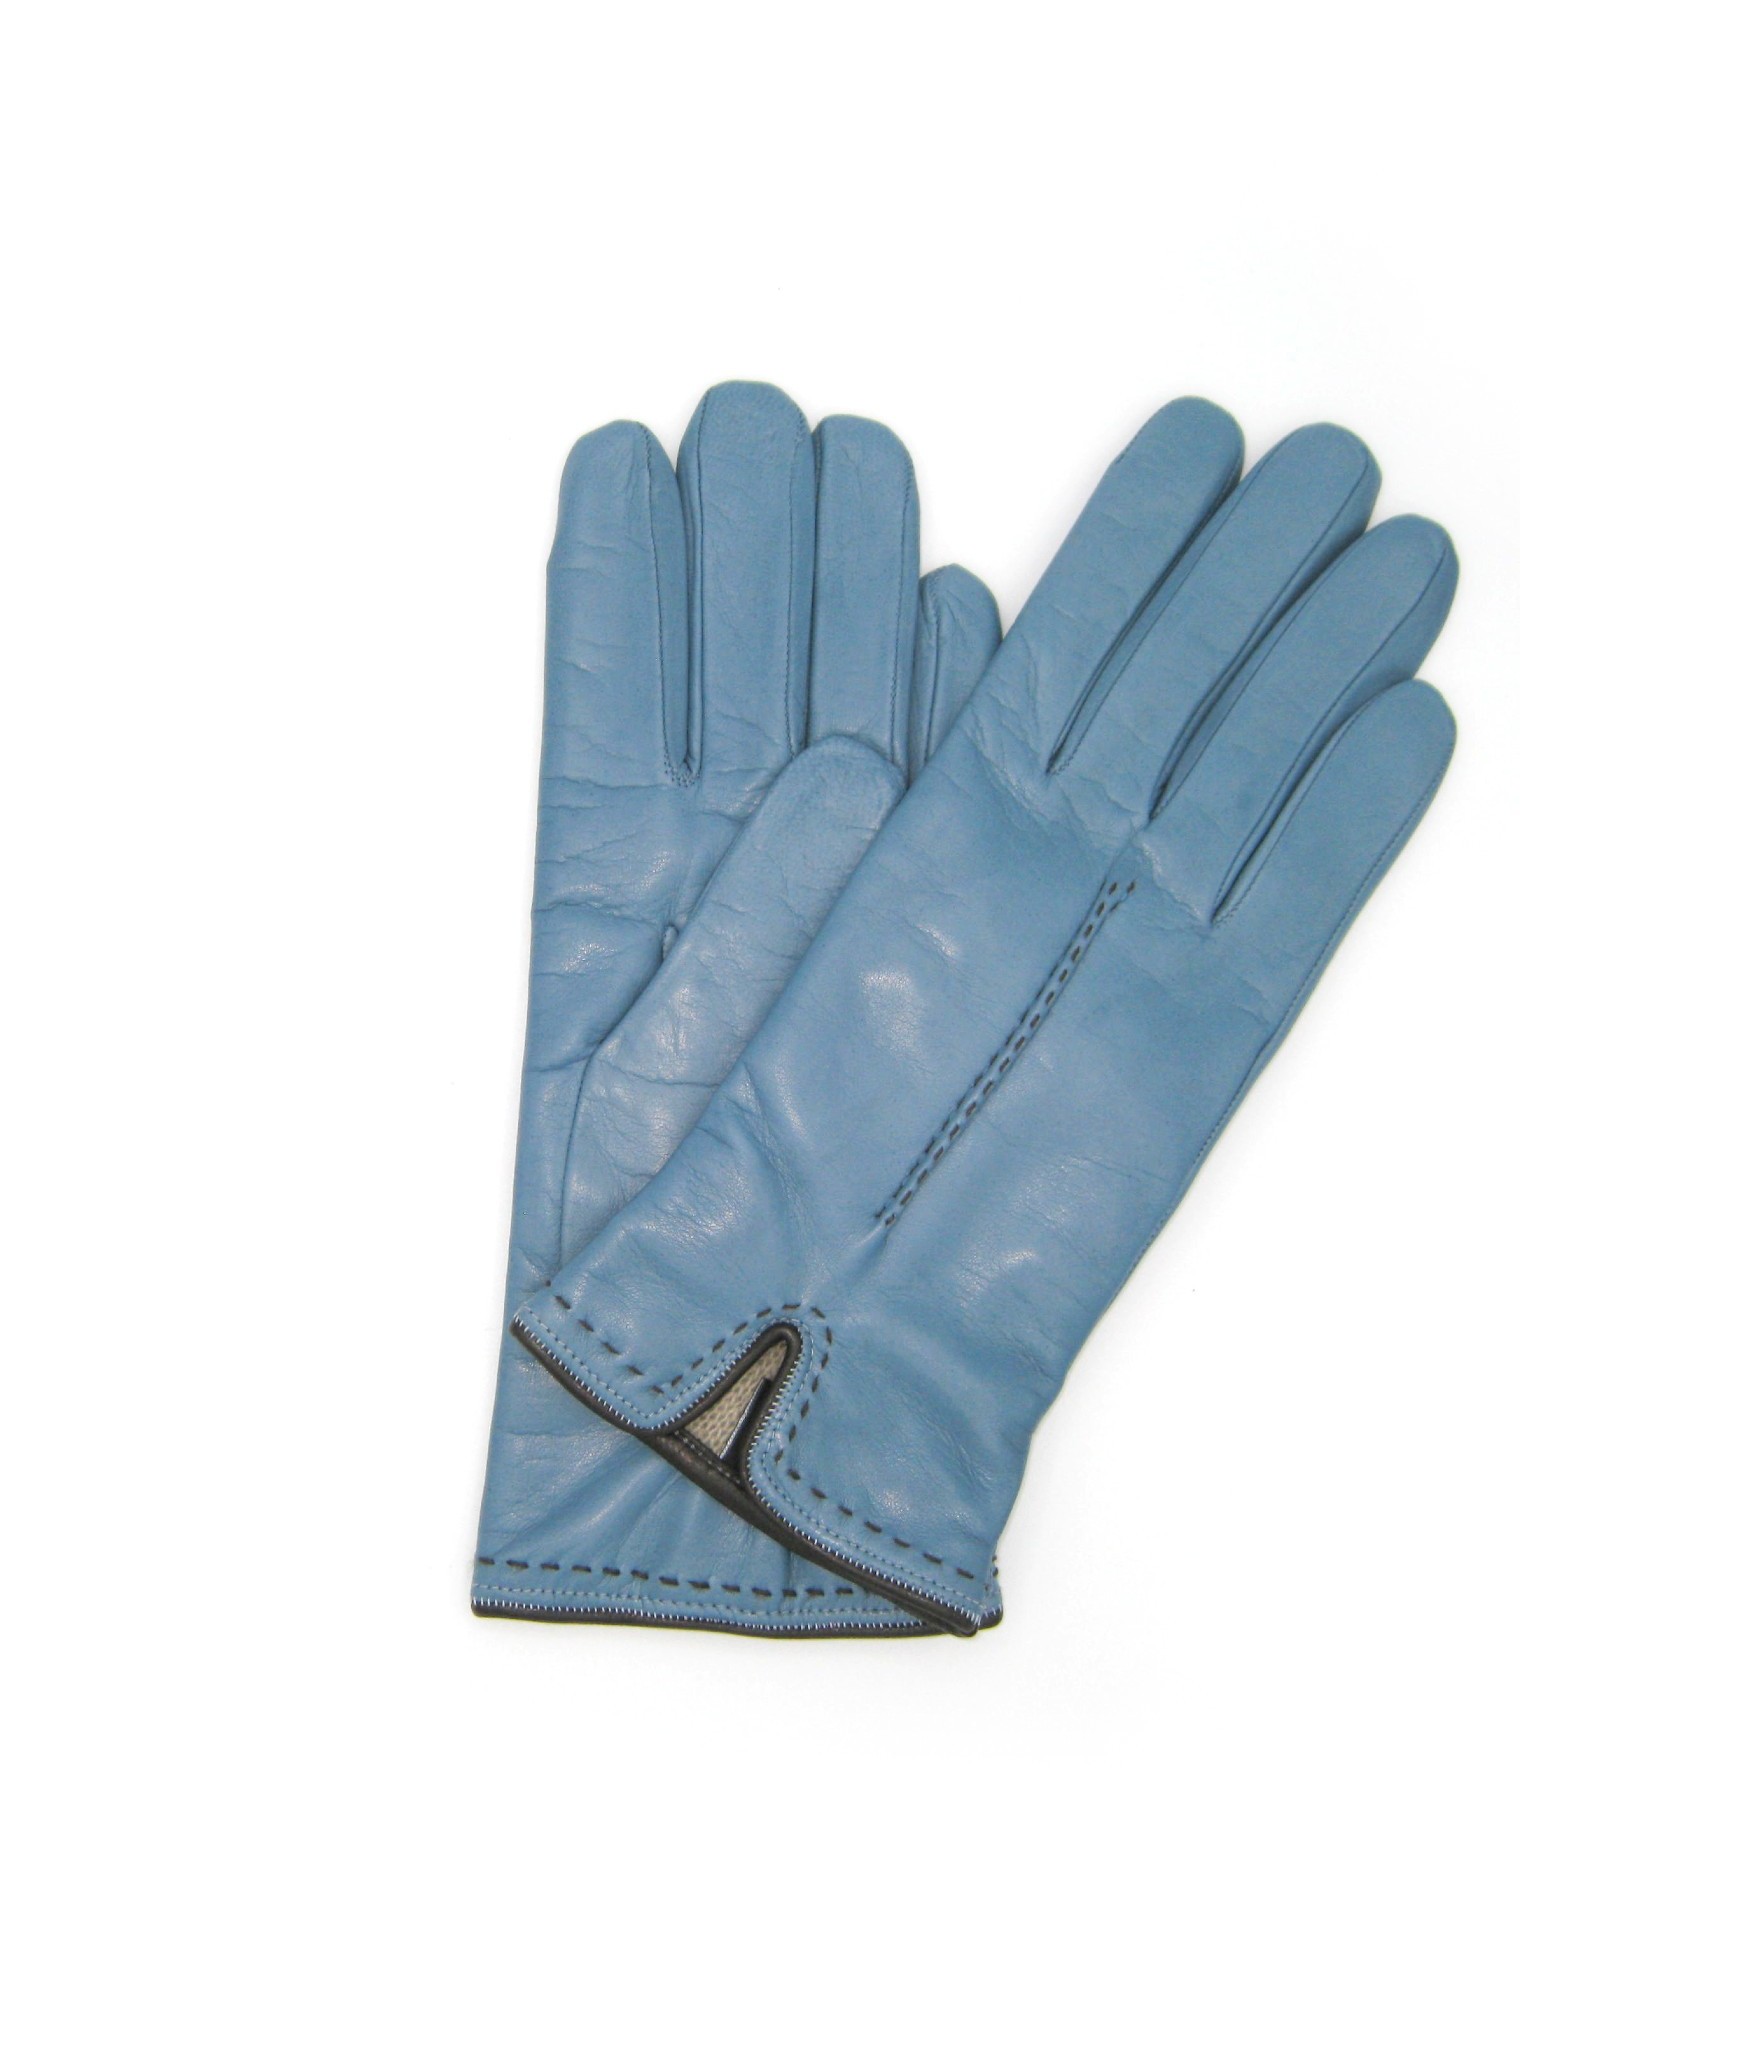 Damen Fashion Nappaleder handschuhe mit handgelenk detail